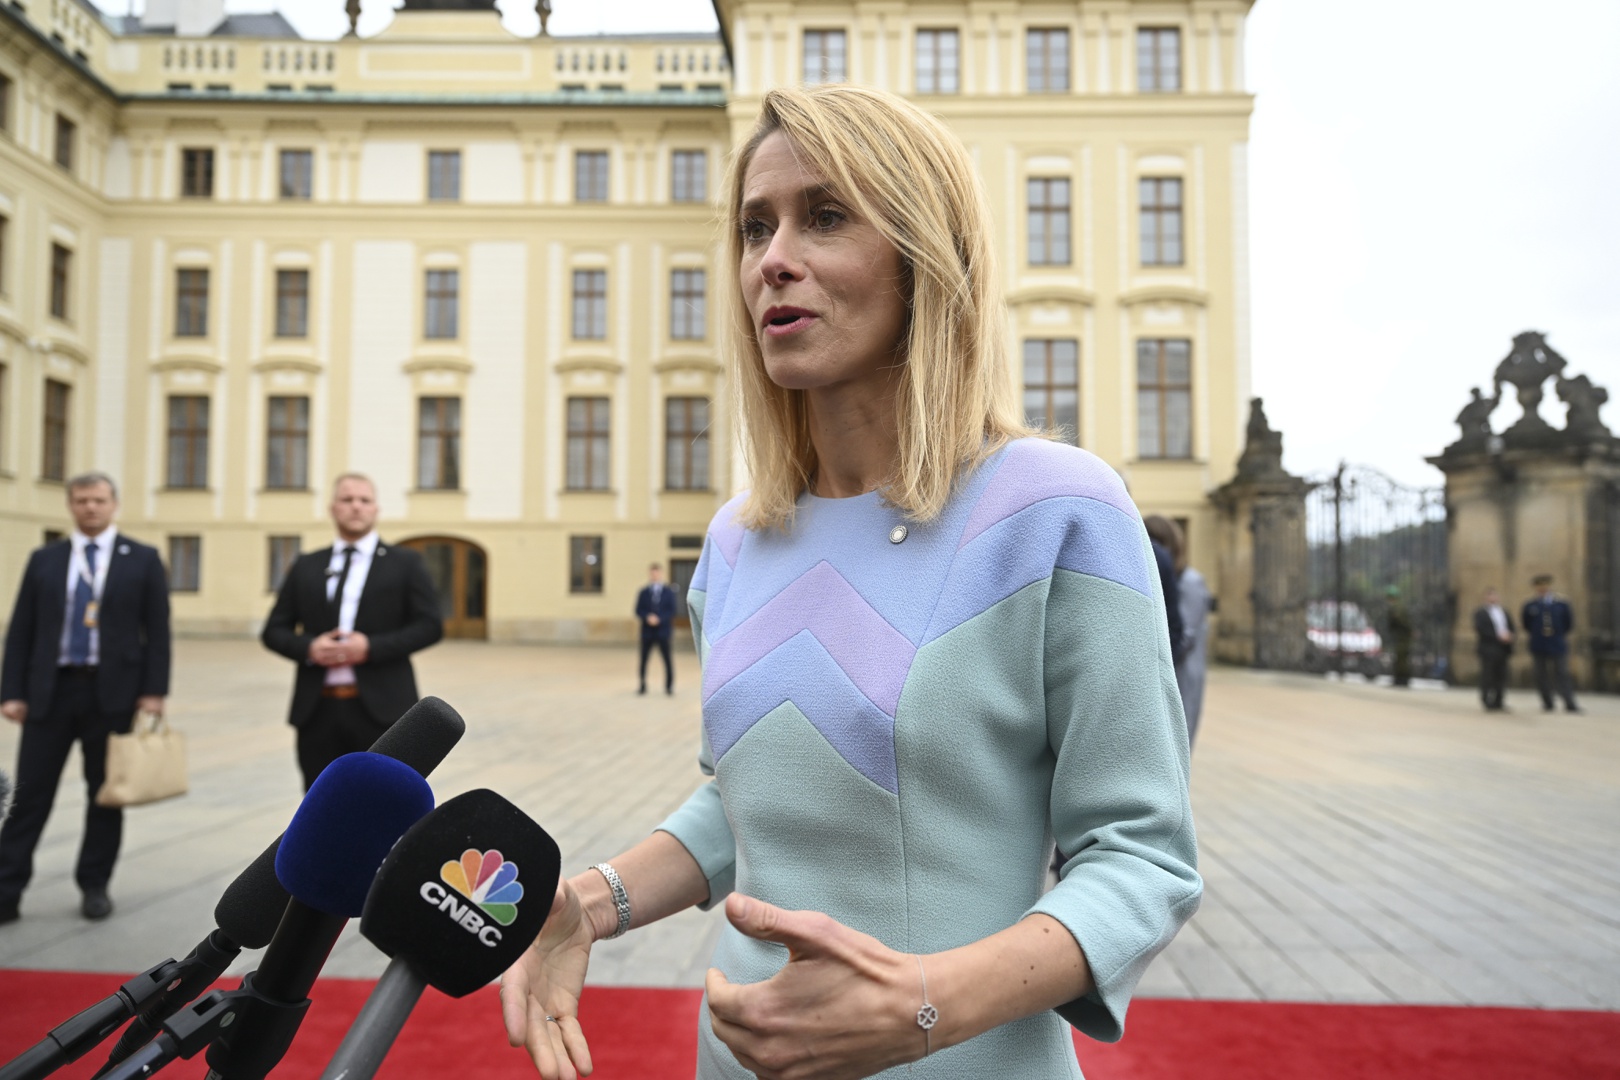 kaja kallas, la 'dama de hierro' báltica que despertó la ira del kremlin